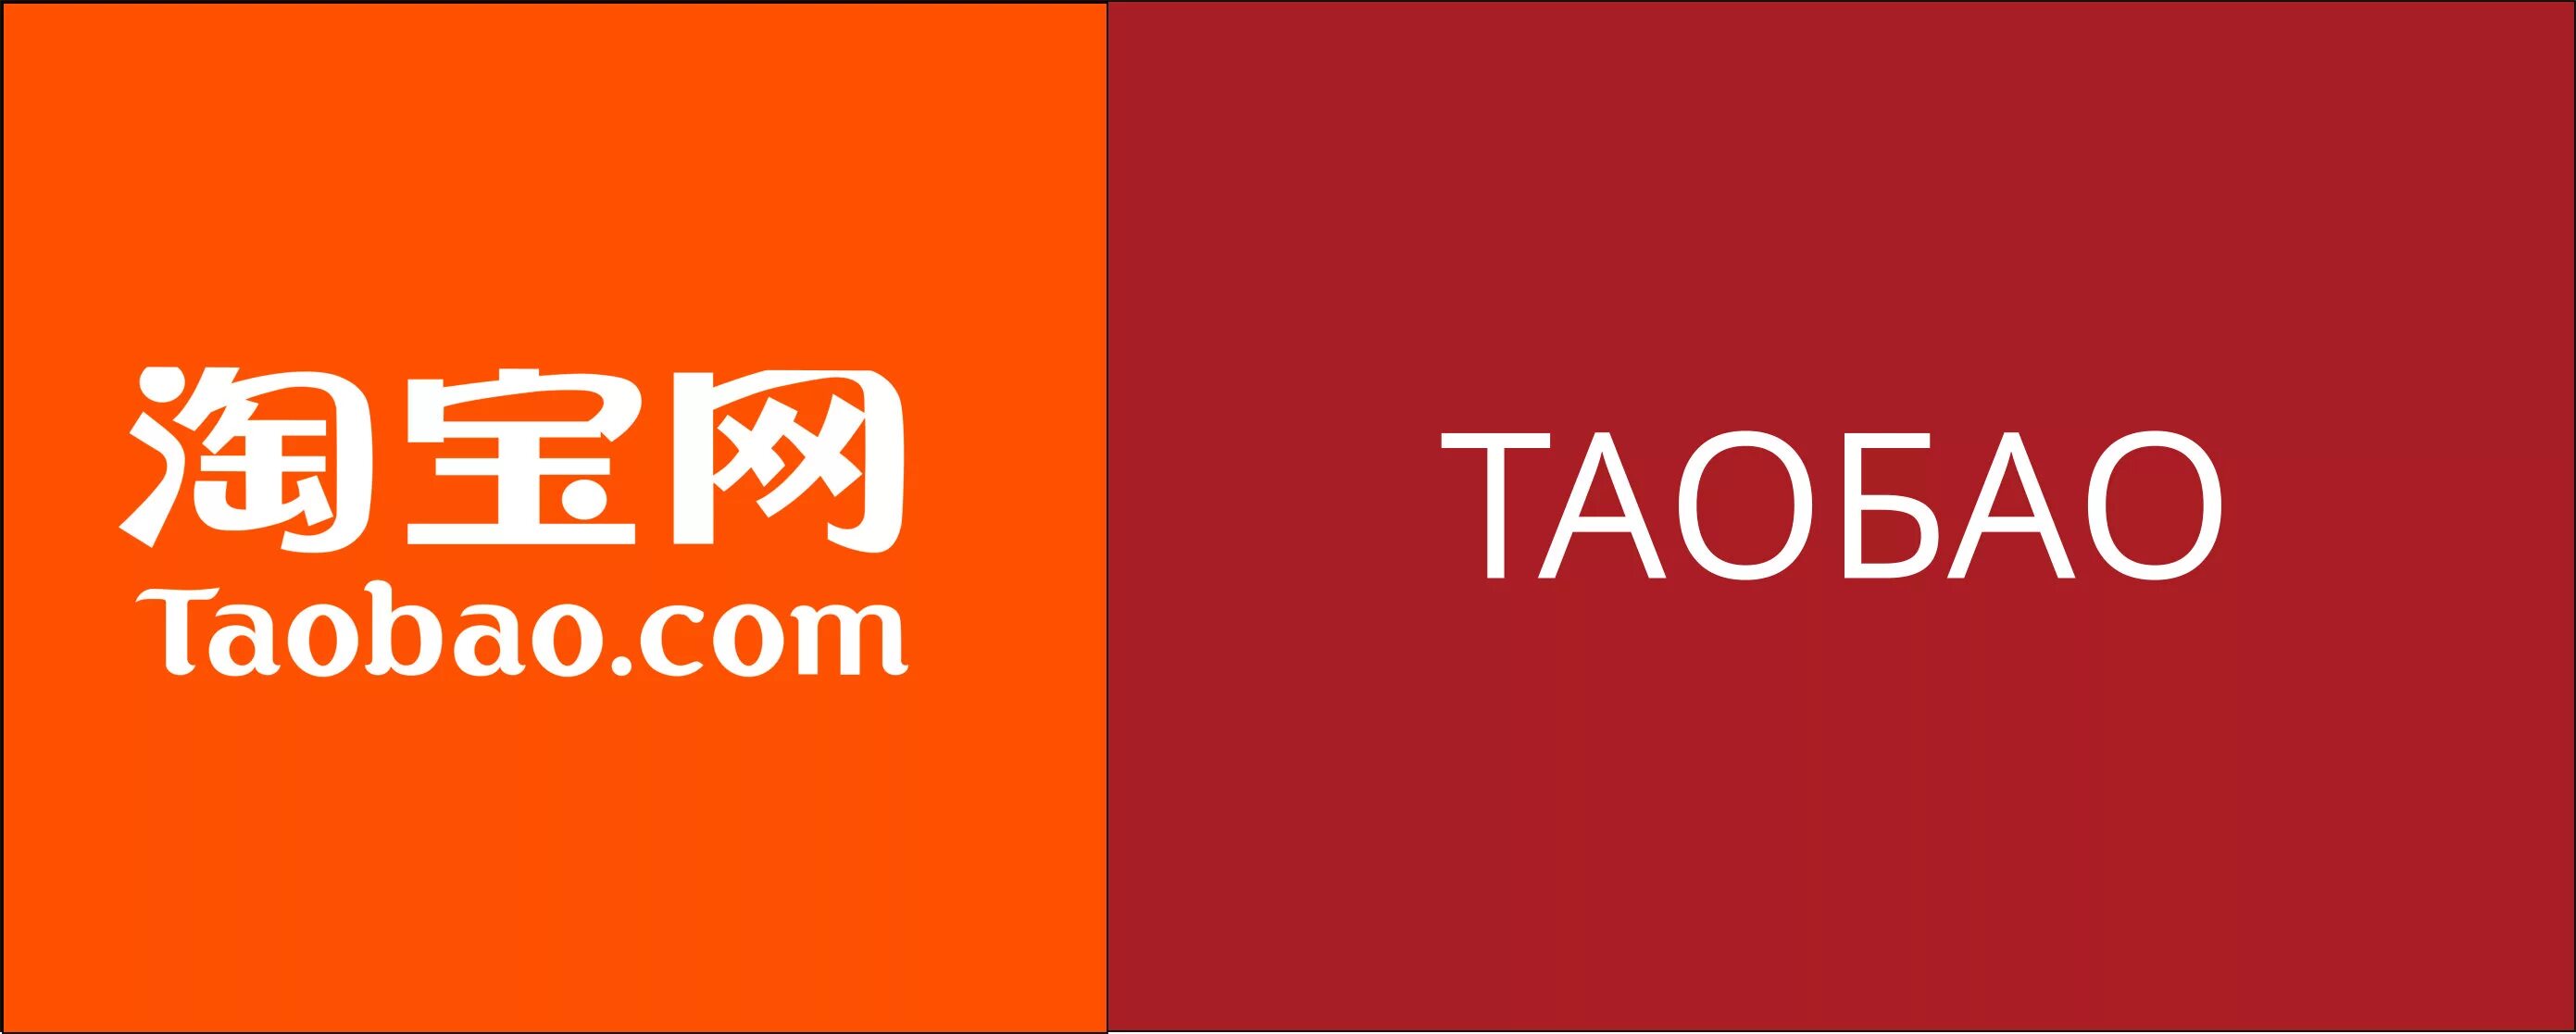 Таобао. Таобао логотип. Таобао 1688. Таобао.com.